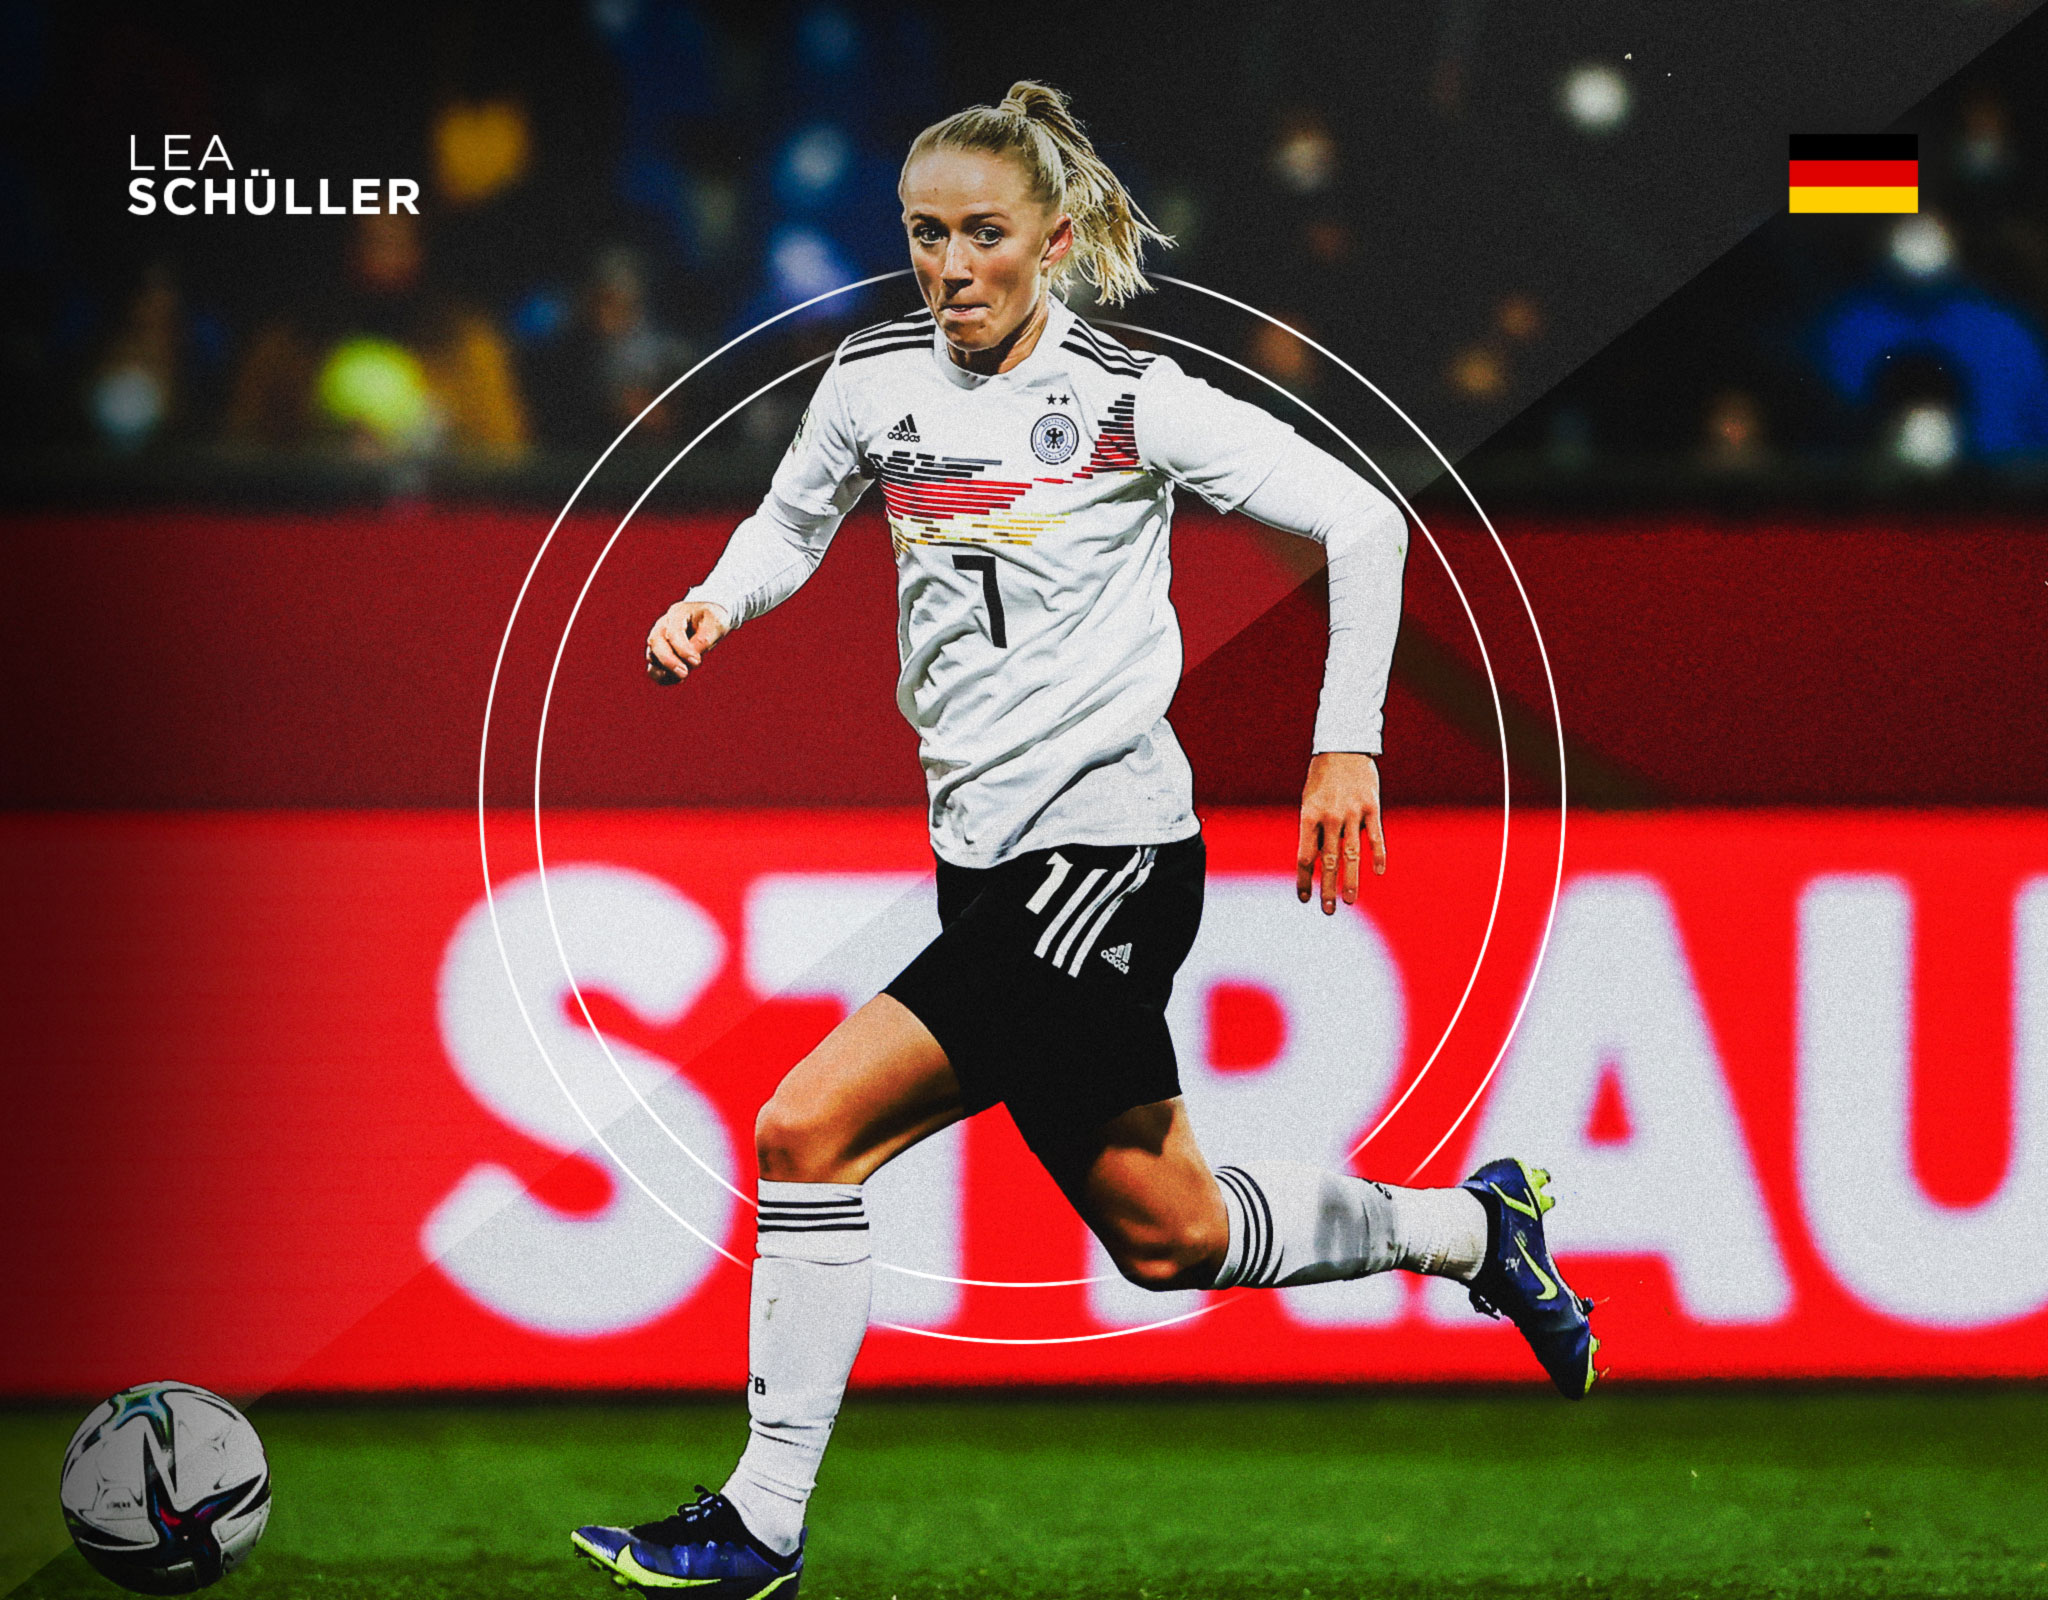 Lea Schüller de Alemania en la Eurocopa Femenina 2022